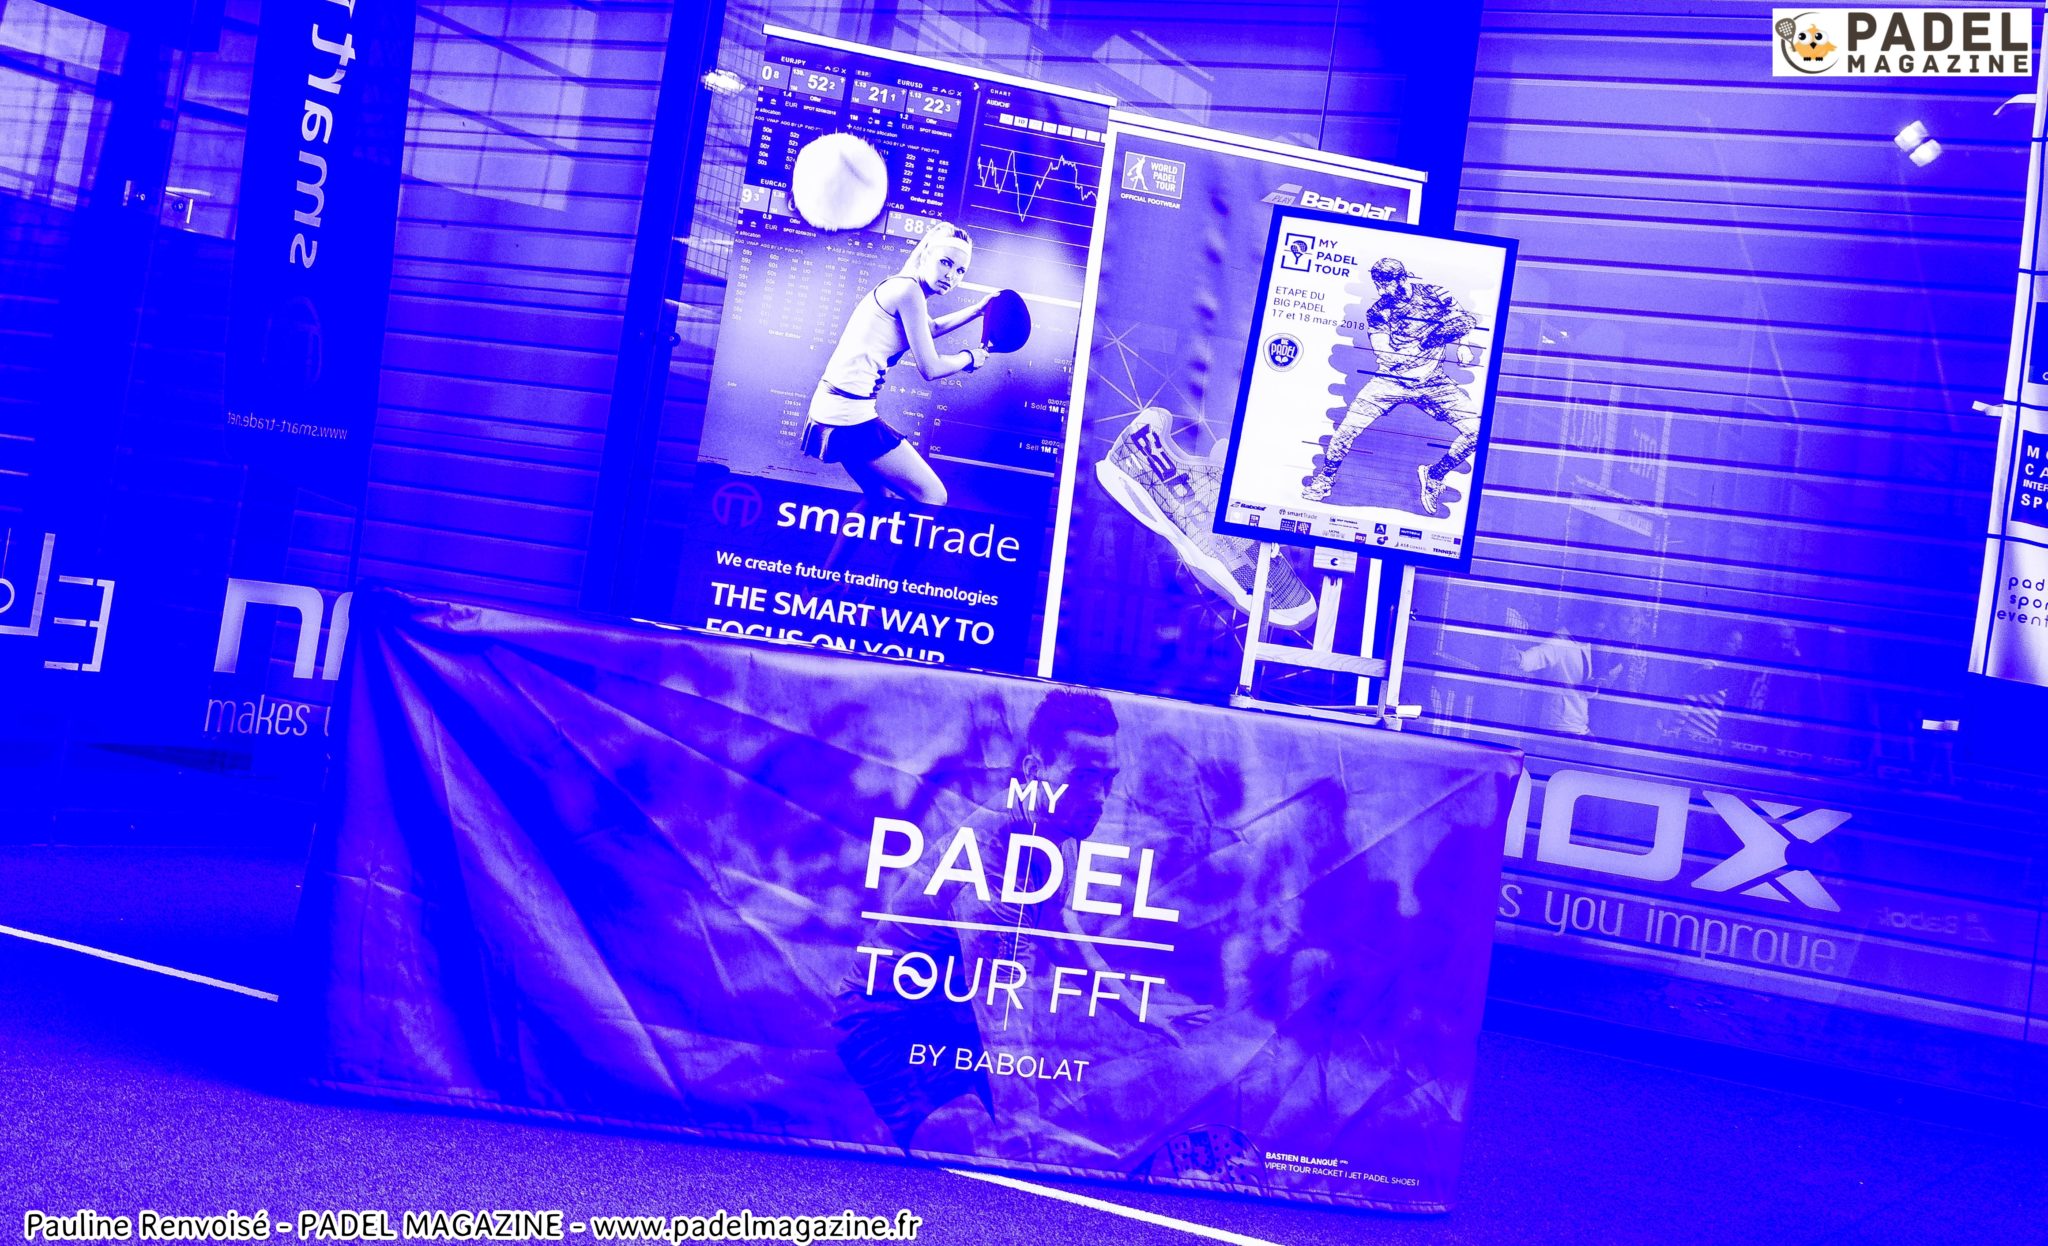 での行動規則 padel - ぼくの PADEL TOUR